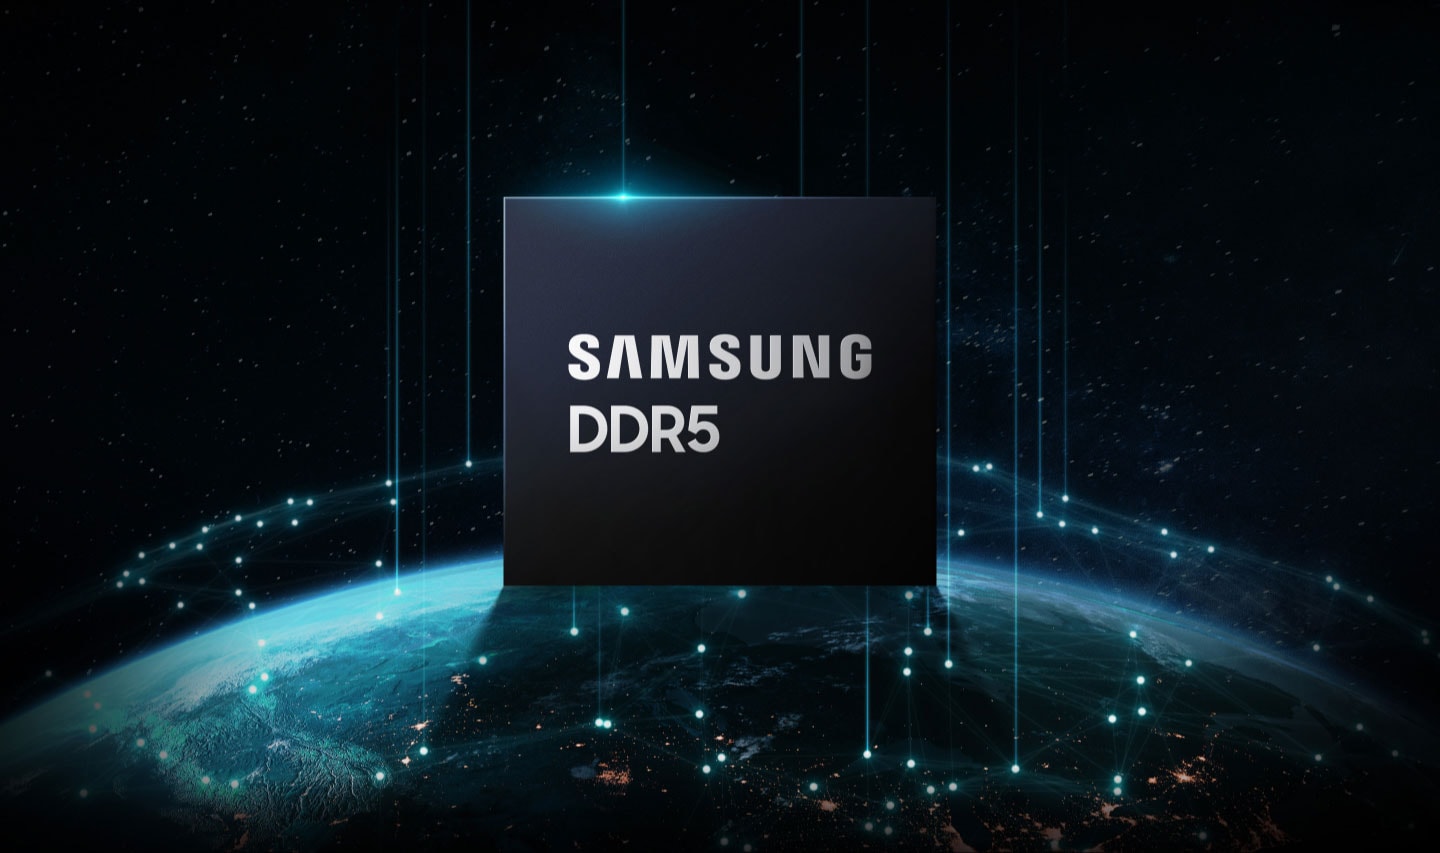 삼성 DDR5 칩이 지구 위에 올려져 있는 설명 이미지